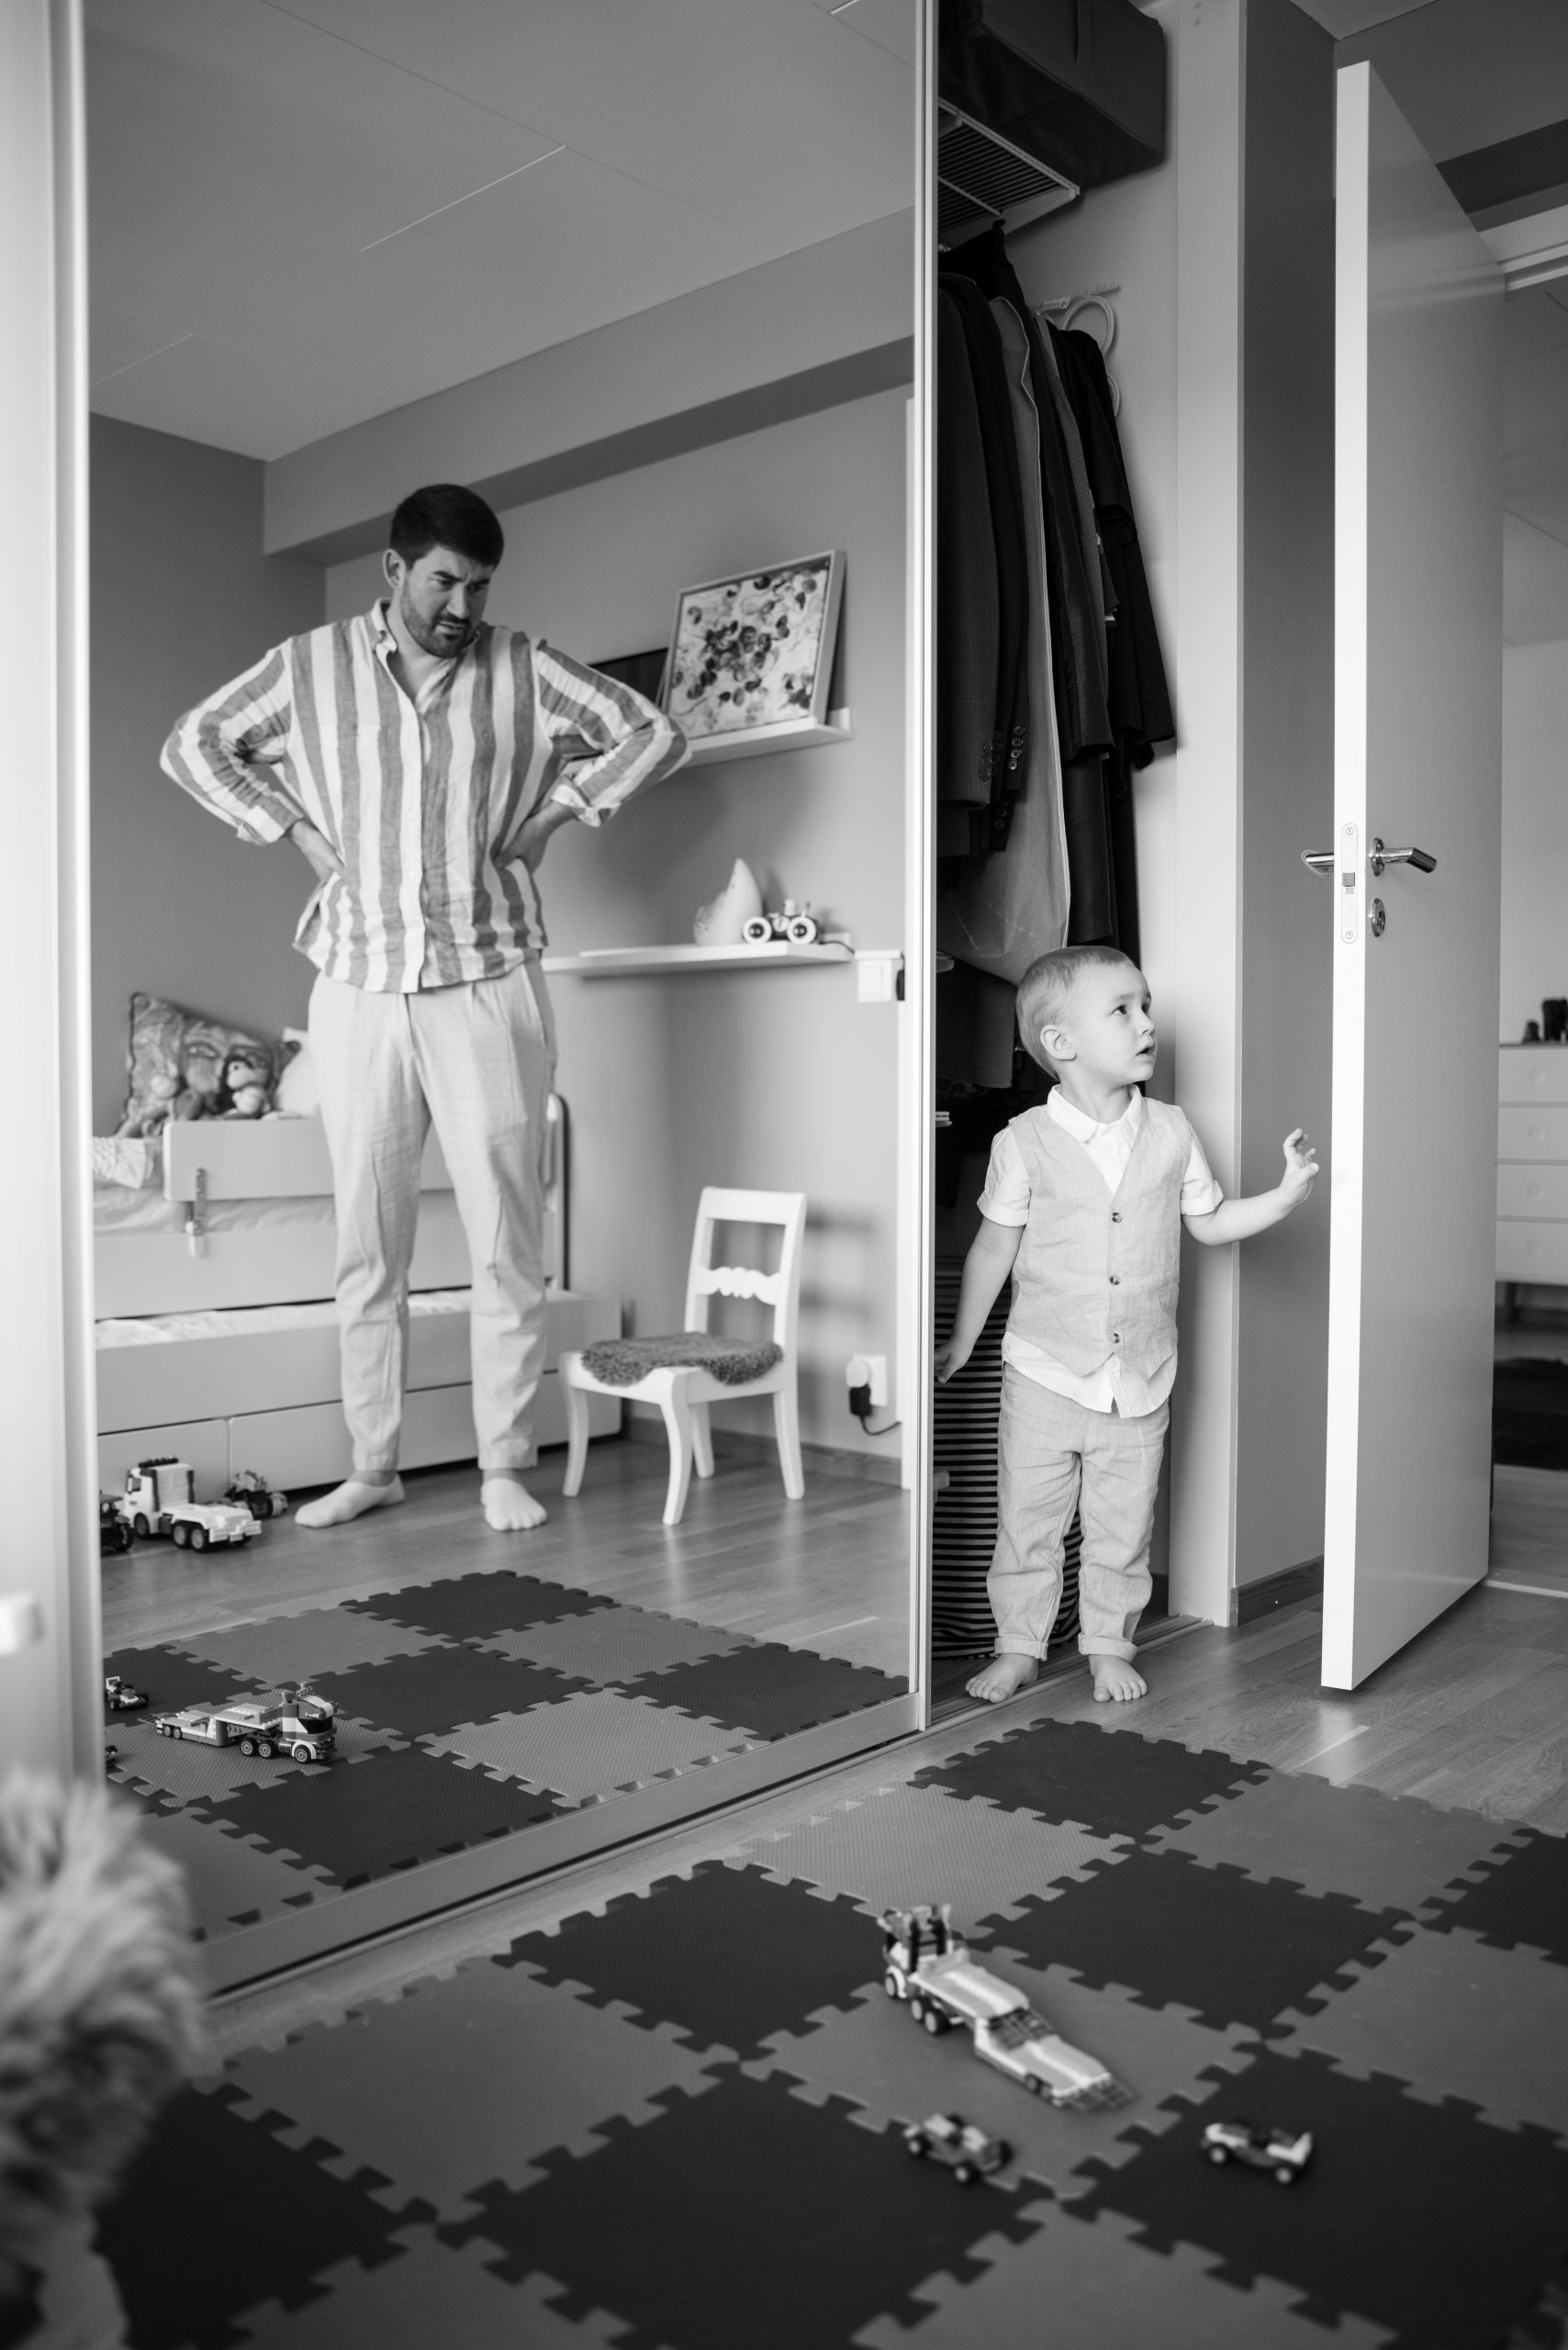 Fotograf för familjefotograferingar i Malmö, har en dokumentär approach men det går även att få ett par uppställda bilder om familjen vill. Finns i Skåne.